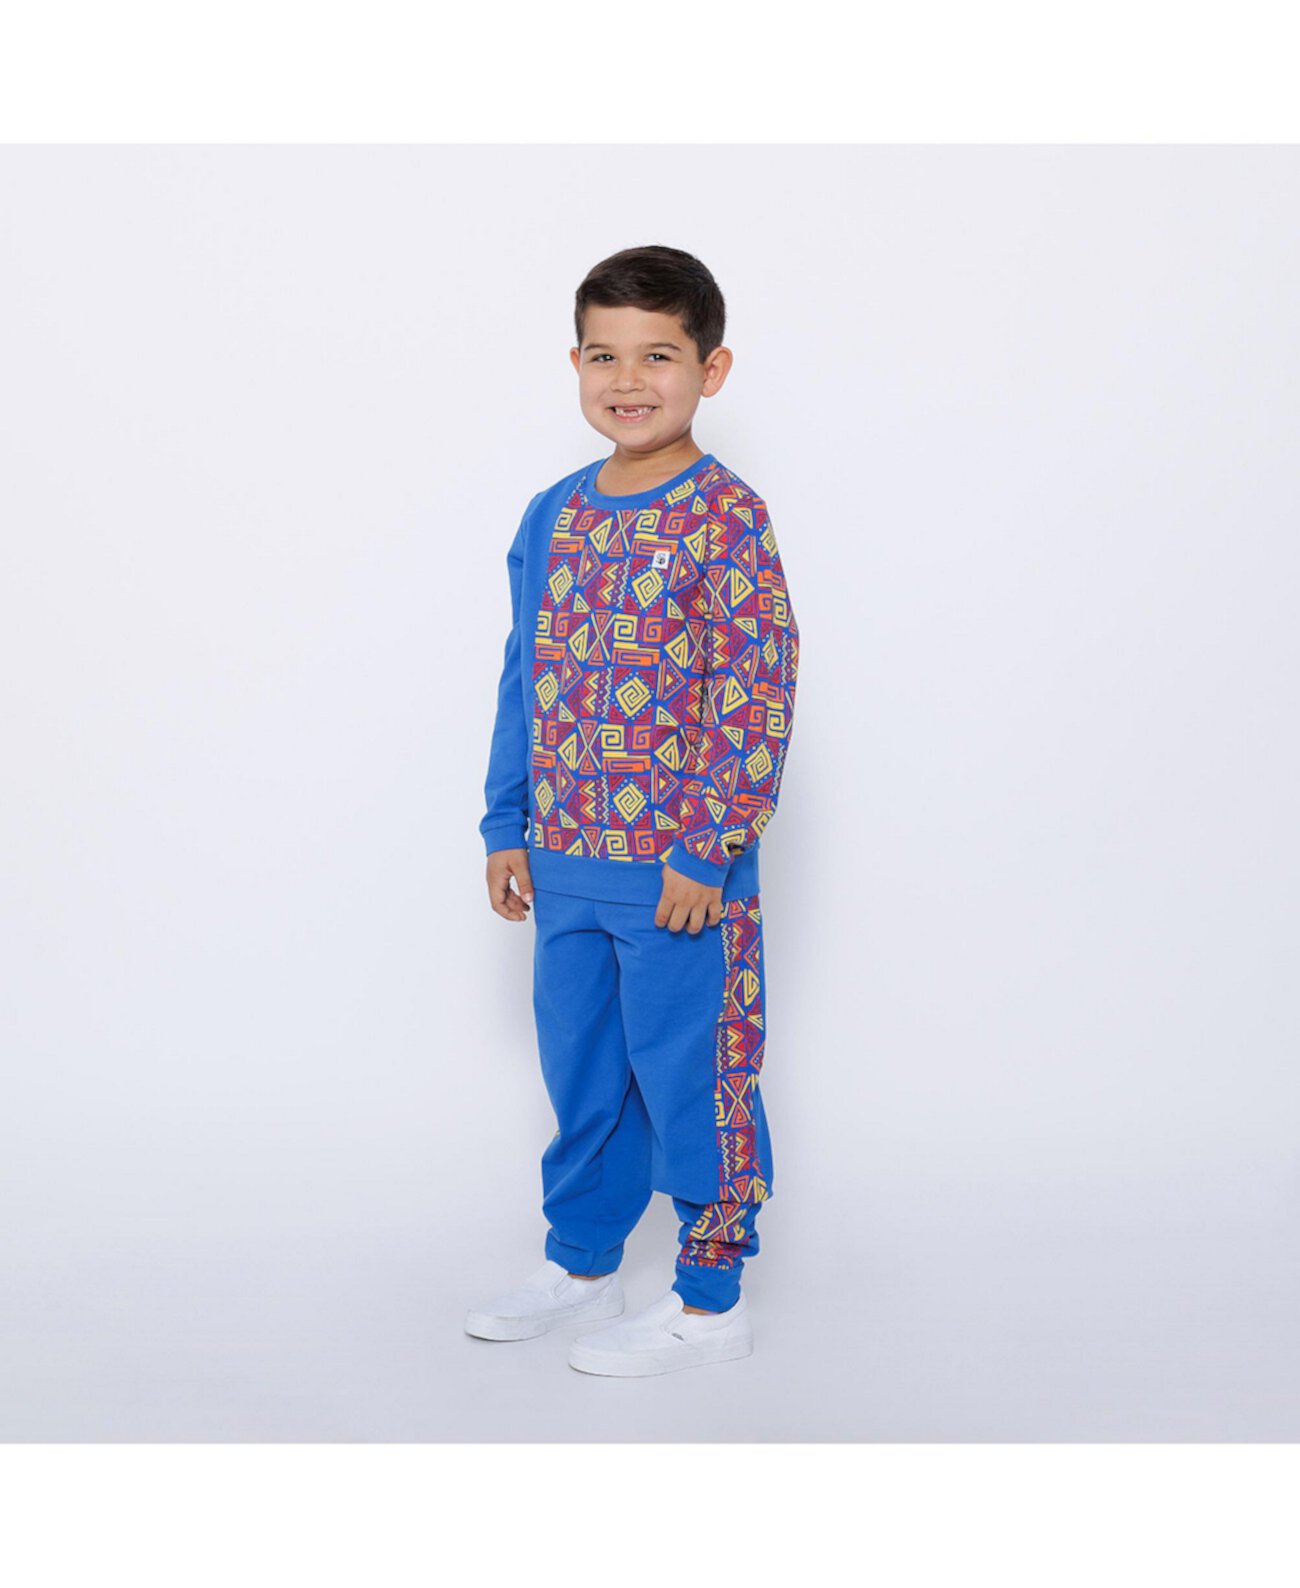 Детский комплект одежды Mixed Up Clothing - Boys Crewneck Sweatshirt and Jogger Pants Set Mixed Up Clothing